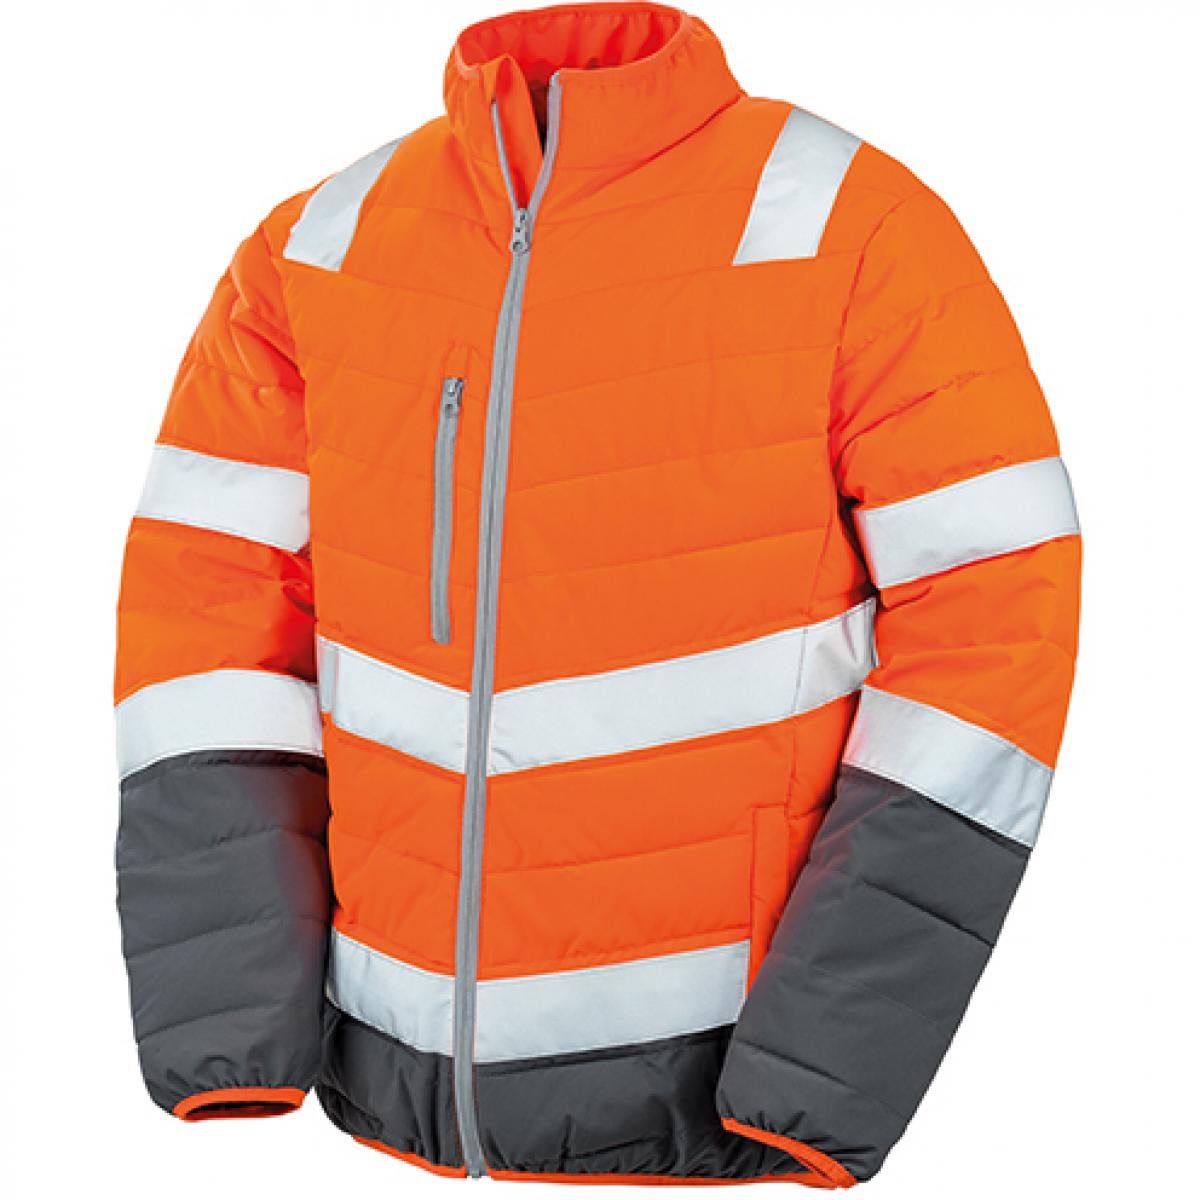 Hersteller: Result Herstellernummer: R325M Artikelbezeichnung: Herren Soft Padded Safety Jacke / ISO EN20471:2013 Klasse 2 Farbe: Fluorescent Orange/Grey